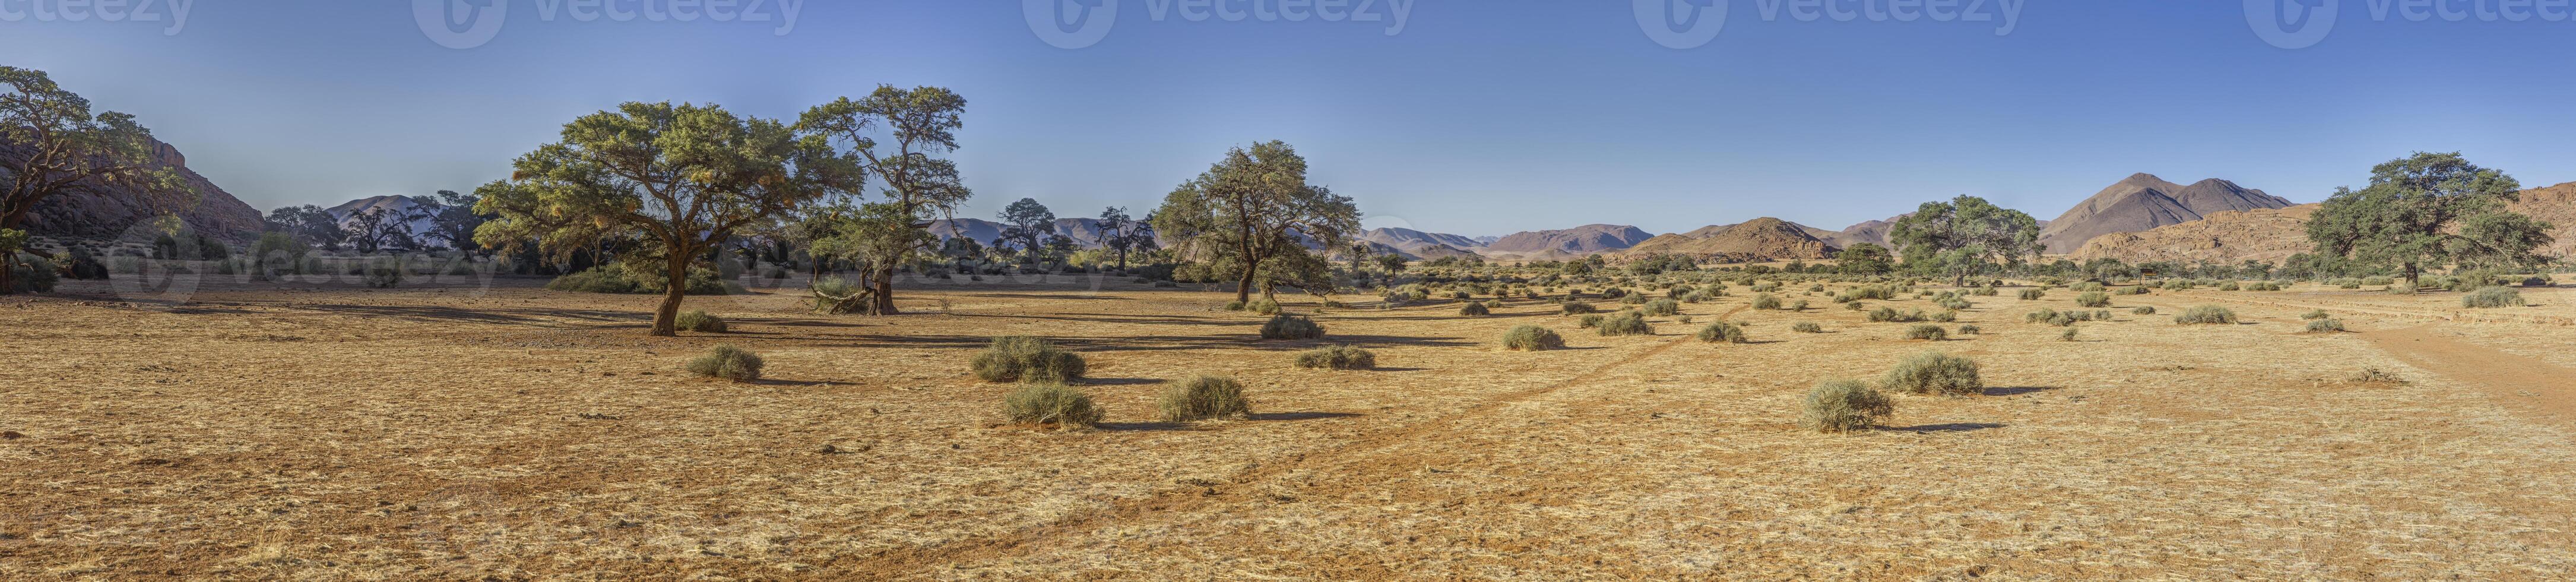 imagen de el único paisaje de el tiras montañas en el borde de el namib Desierto en Namibia foto